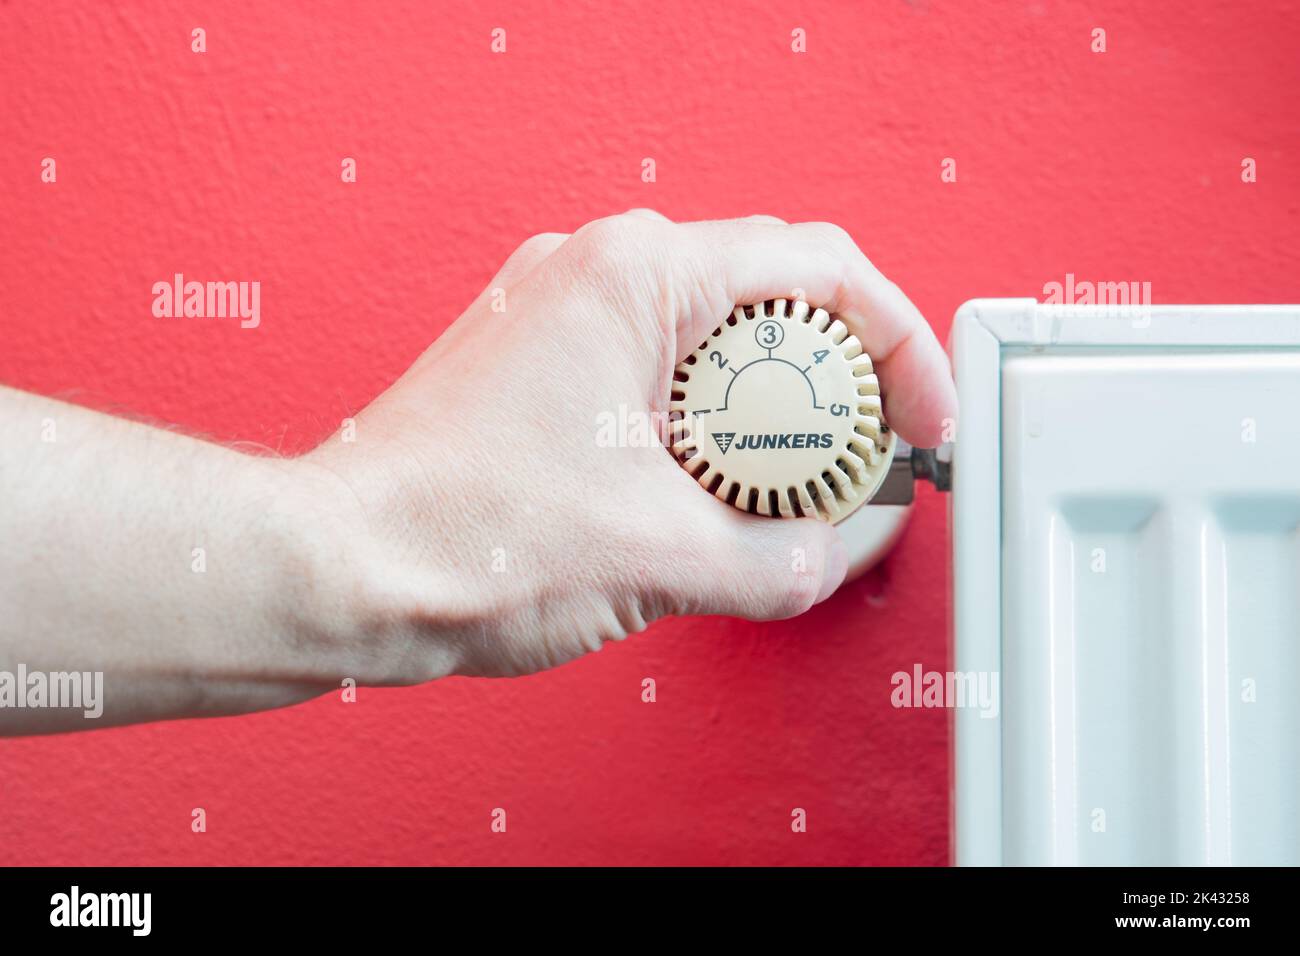 Maintenir le thermostat sur le radiateur à la main pour régler la température. Crise énergétique en Europe. Électricité coûteuse et manque de gaz. Les prix augmentent. Banque D'Images